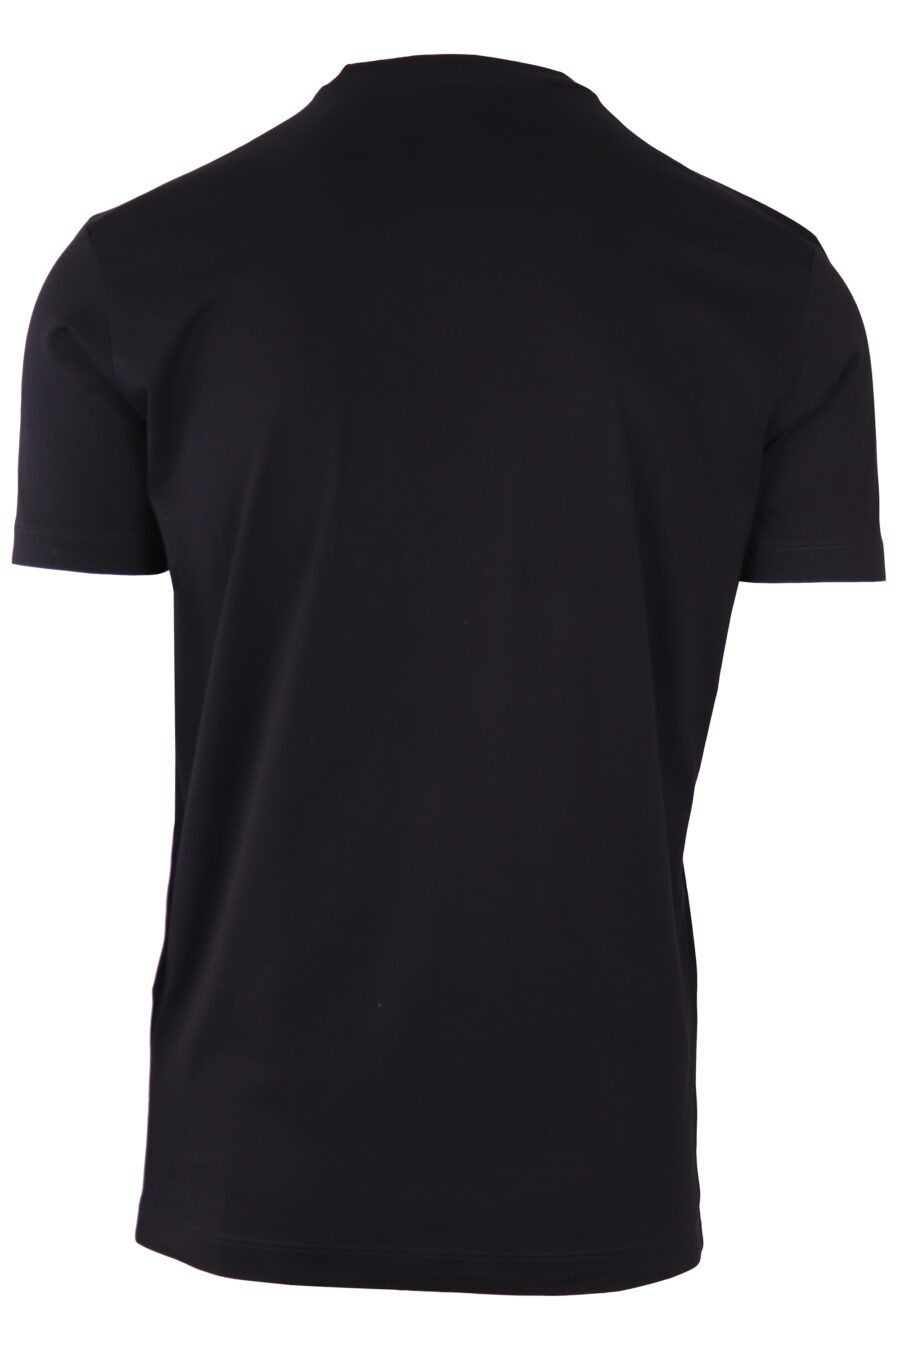 Camiseta negra con maxilogo texto "dean and dan caten" - IMG 7723